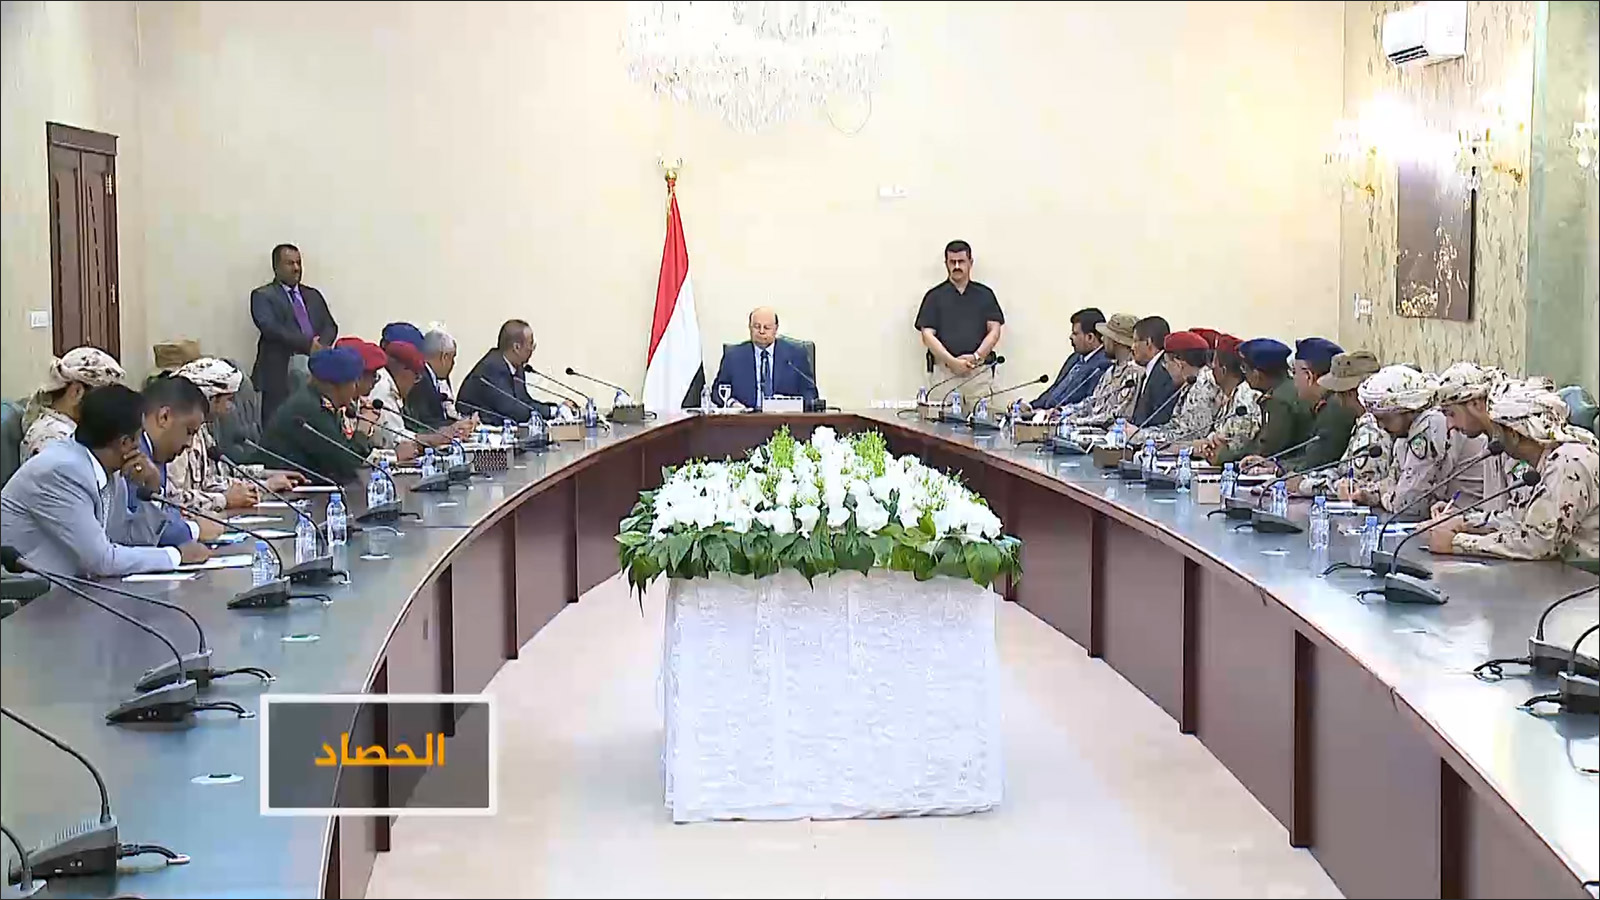 الرئيس هادي طالب باجتماع مع قادة أمن وحضره قادة عسكريون من السعودية والإمارات بوضع حد للانفلات الأمني 